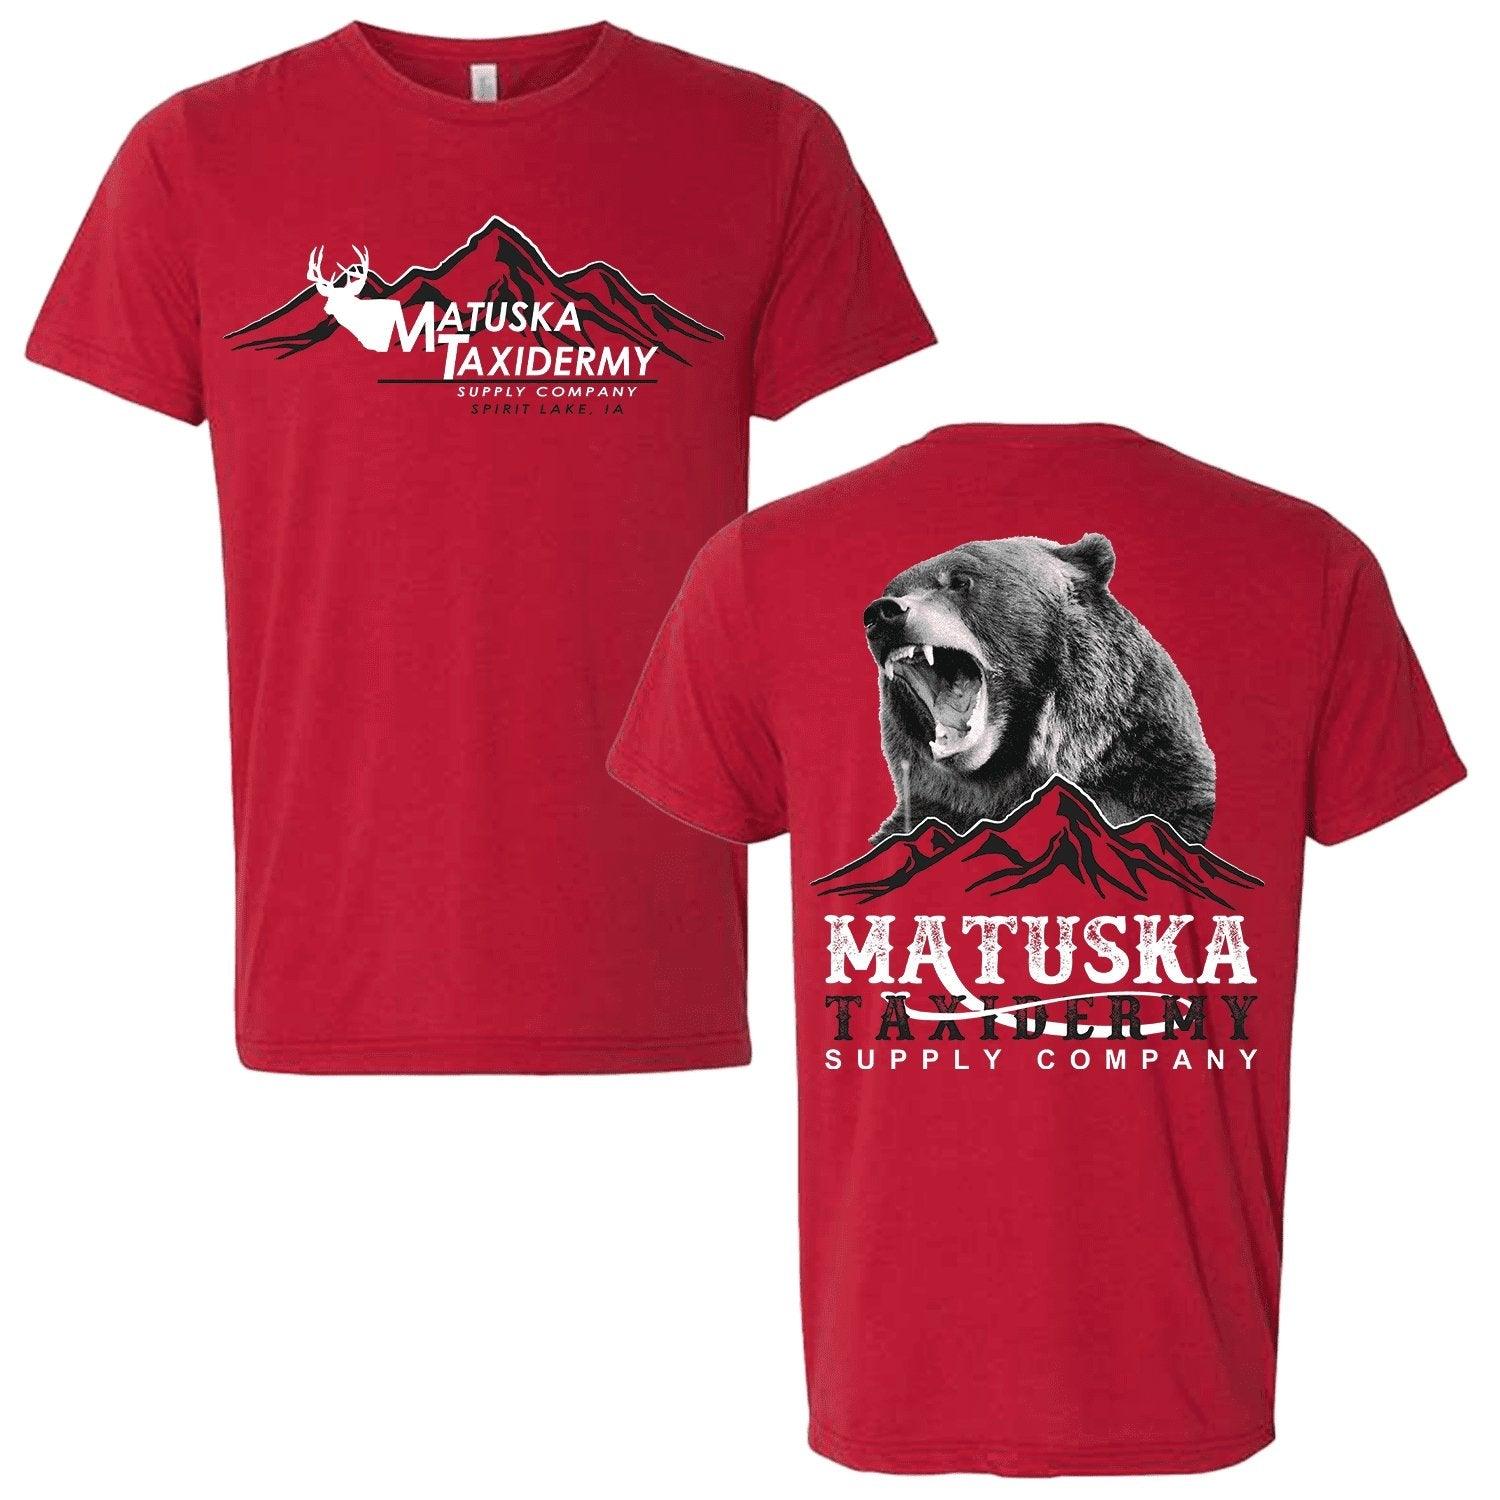 Red Matuska Shirt - Matuska Taxidermy Supply Company